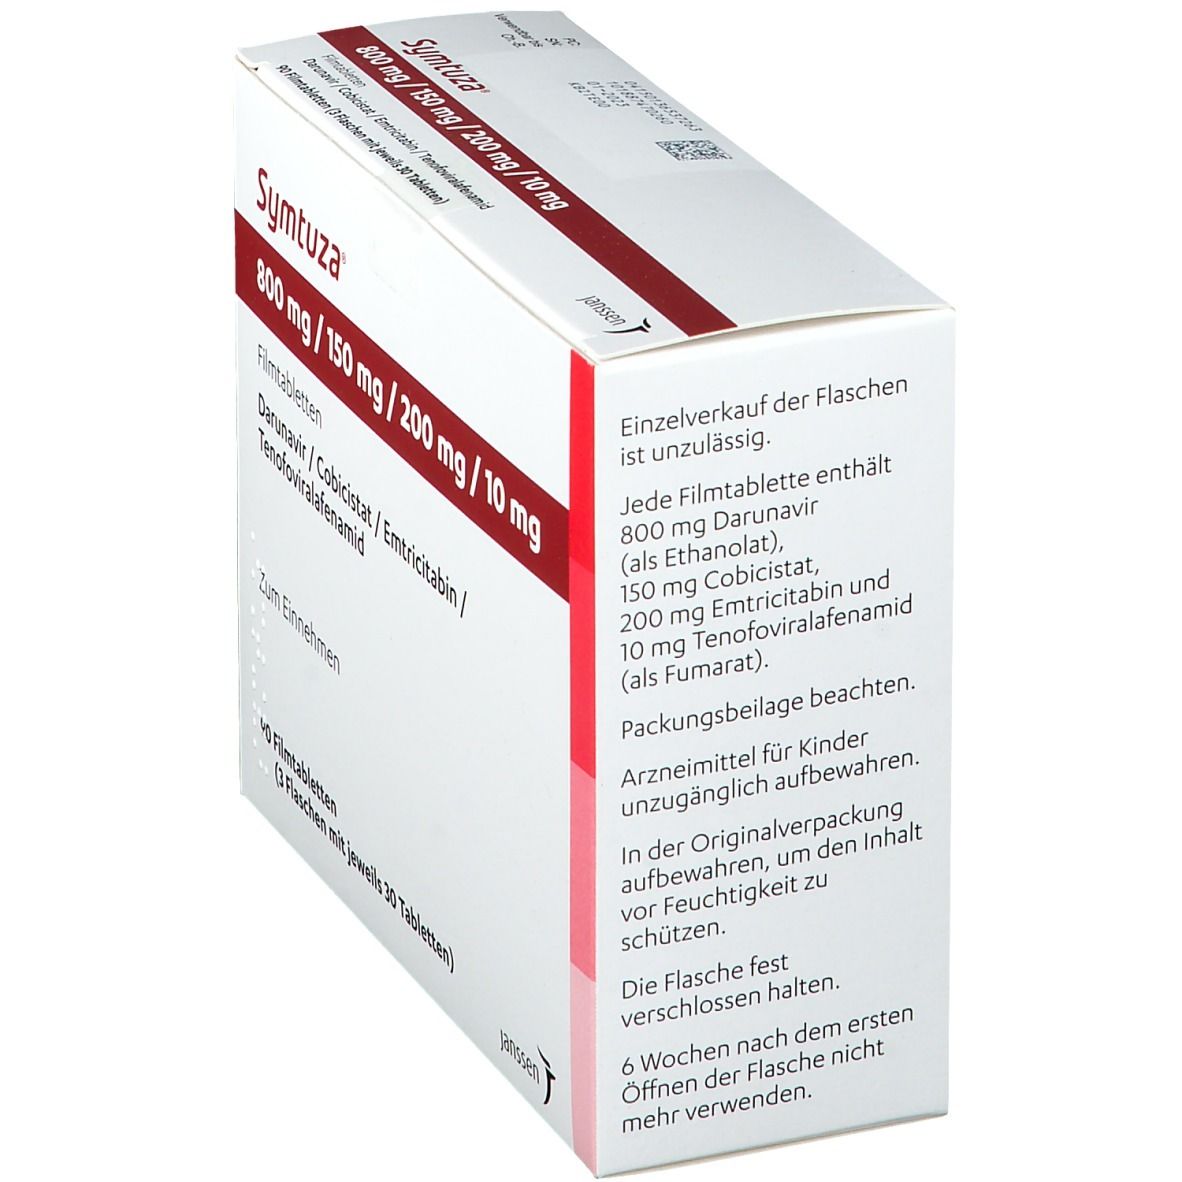 Symtuza® 800 mg/150 mg/200 mg/10 mg